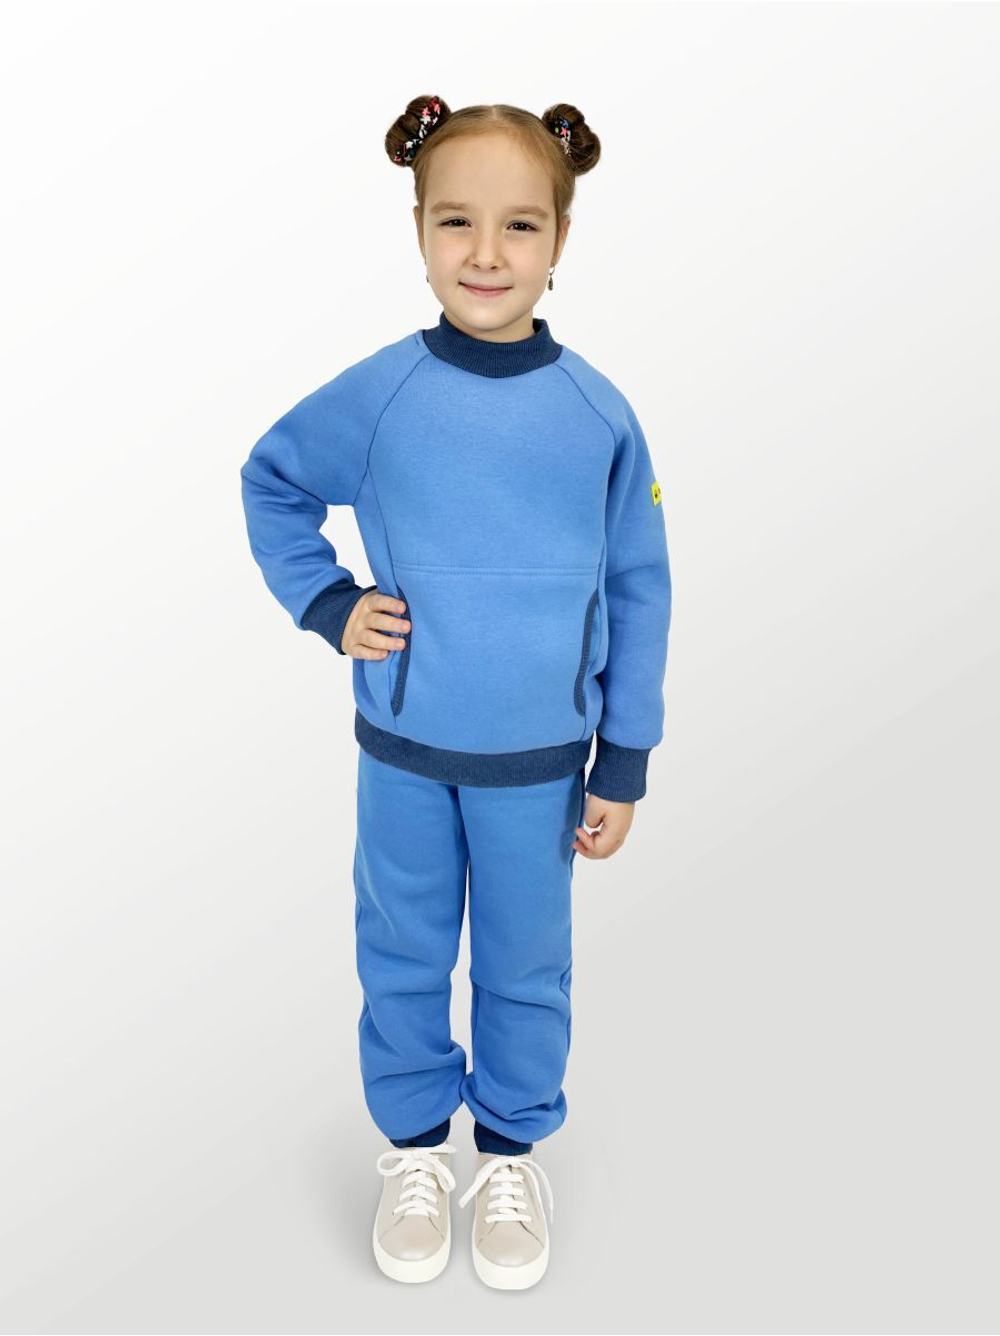 Худи для детей, модель №3, утепленный, рост 92 см, голубой